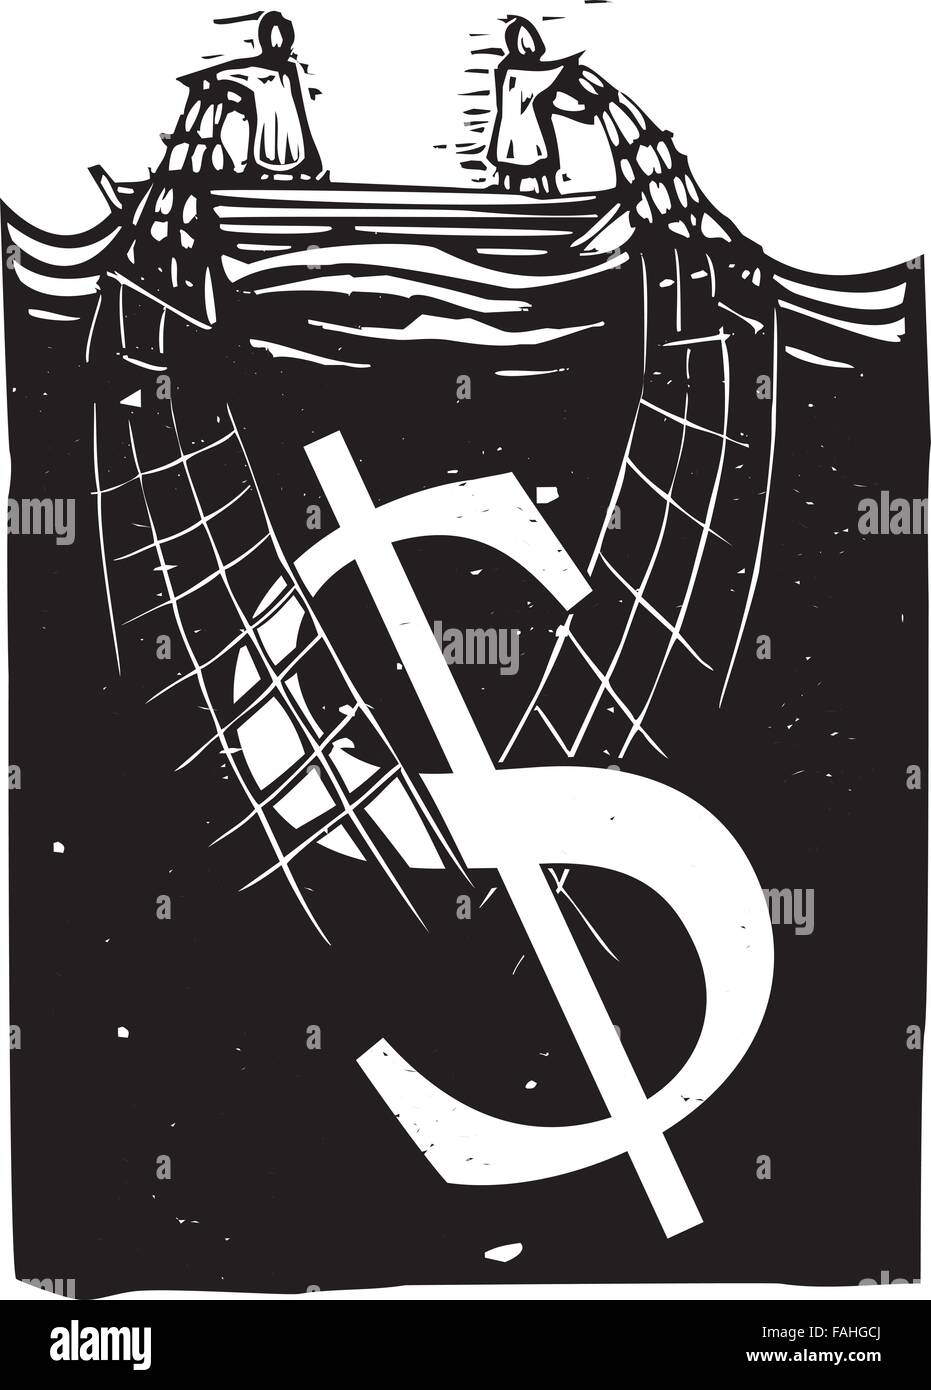 Gravure sur bois de style expressionniste, deux personnes dans un bateau transportant un signe dollar hors de l'eau Illustration de Vecteur